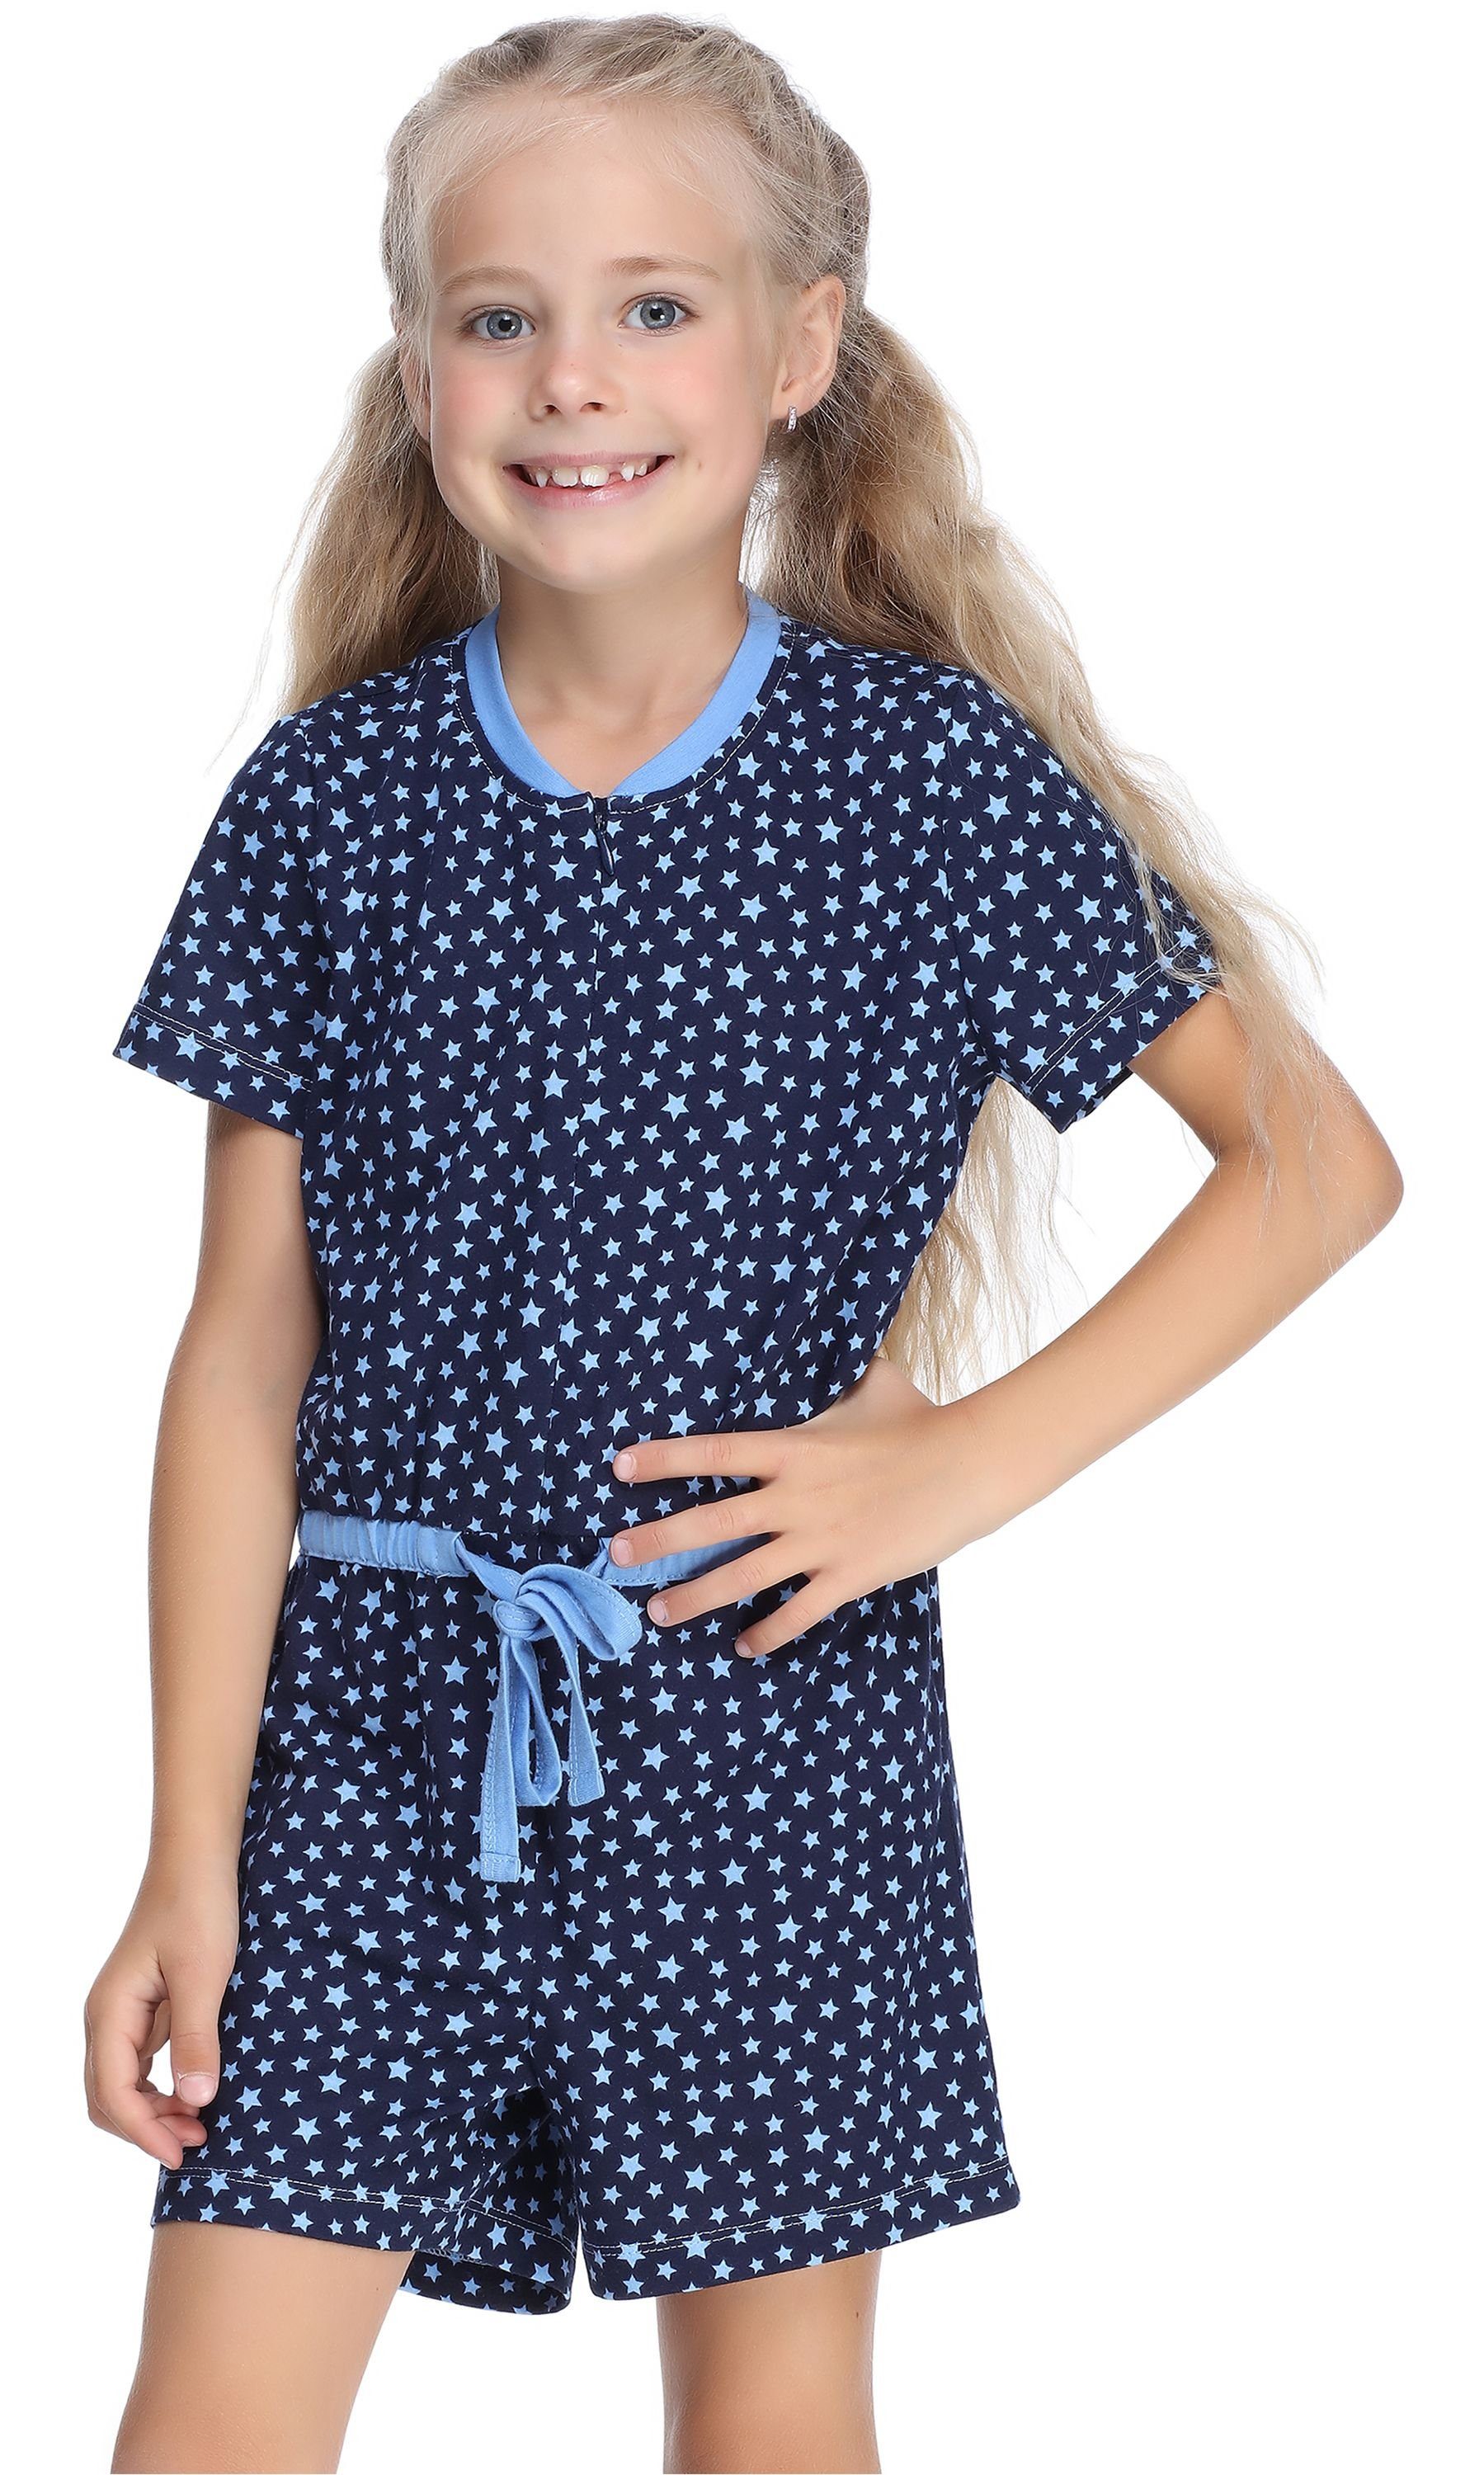 Marineblau/Sterne Schlafanzug Overall Schlafanzug MS10-267 Style Mädchen Merry Short